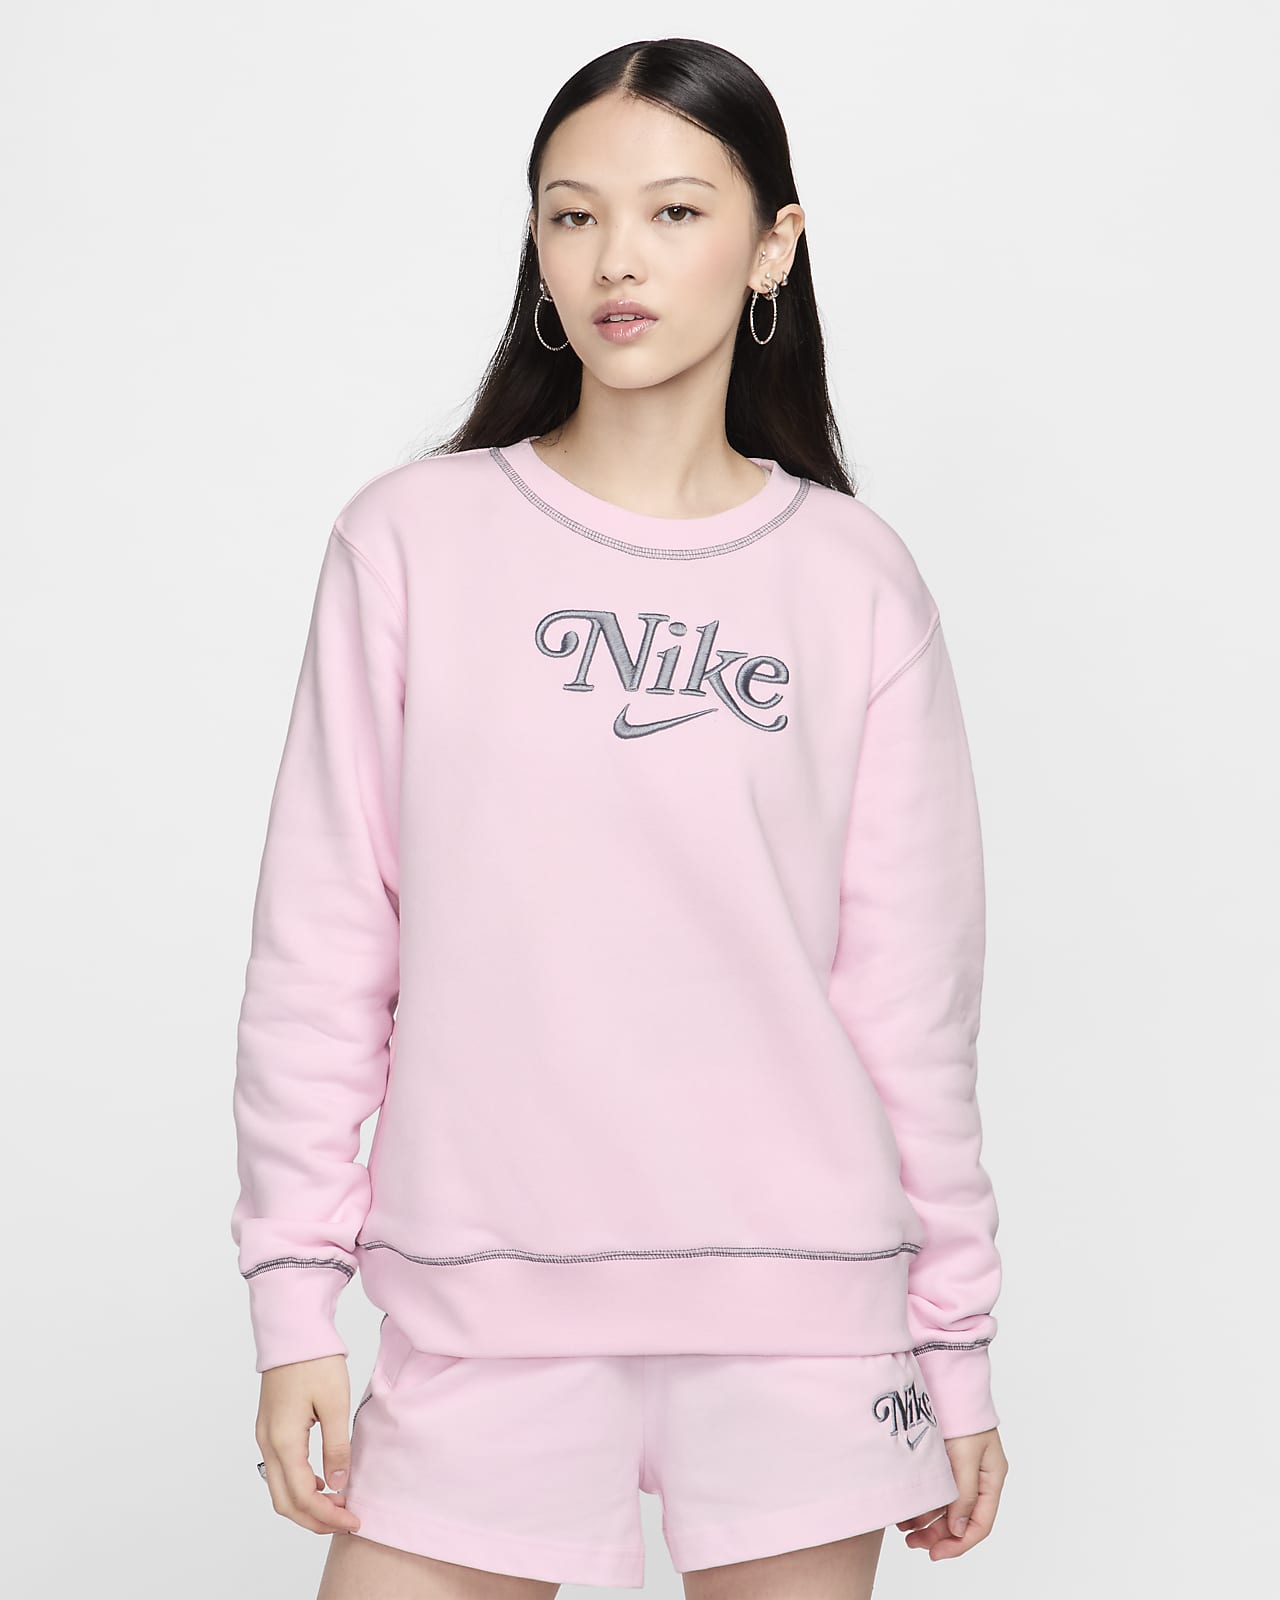 Nike Sportswear Fleece Sıfır Yakalı Kadın Sweatshirt'ü